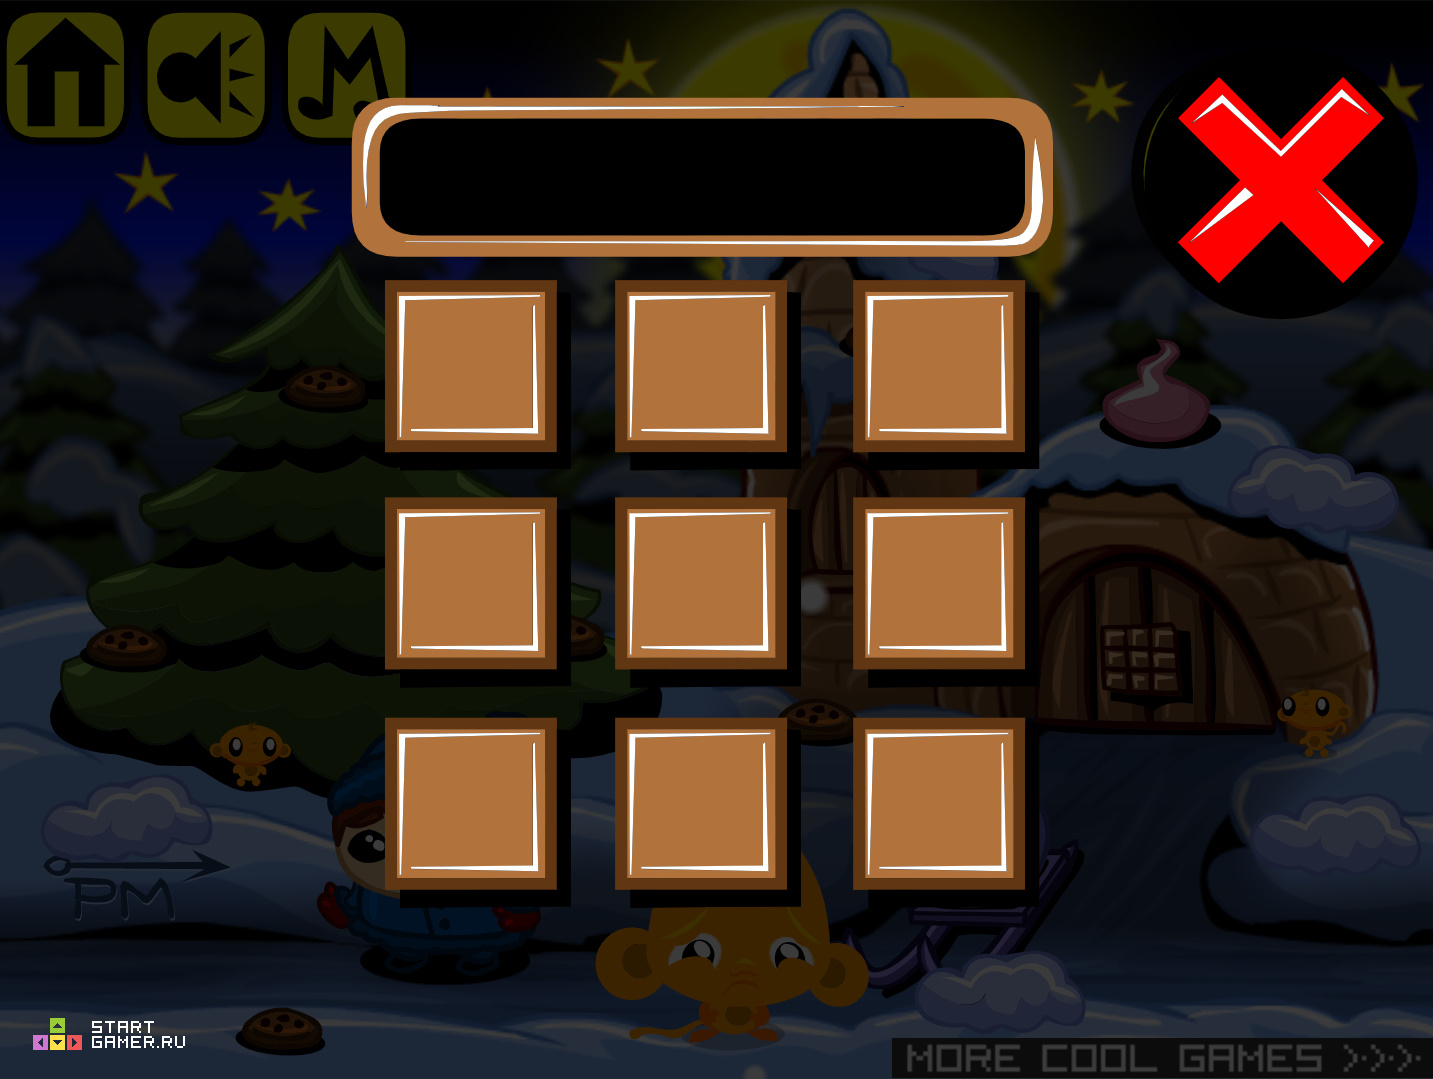 Игра уровень 252. Игра на компьютер ставить бомбы на карте до 10 игроков обезьянка.